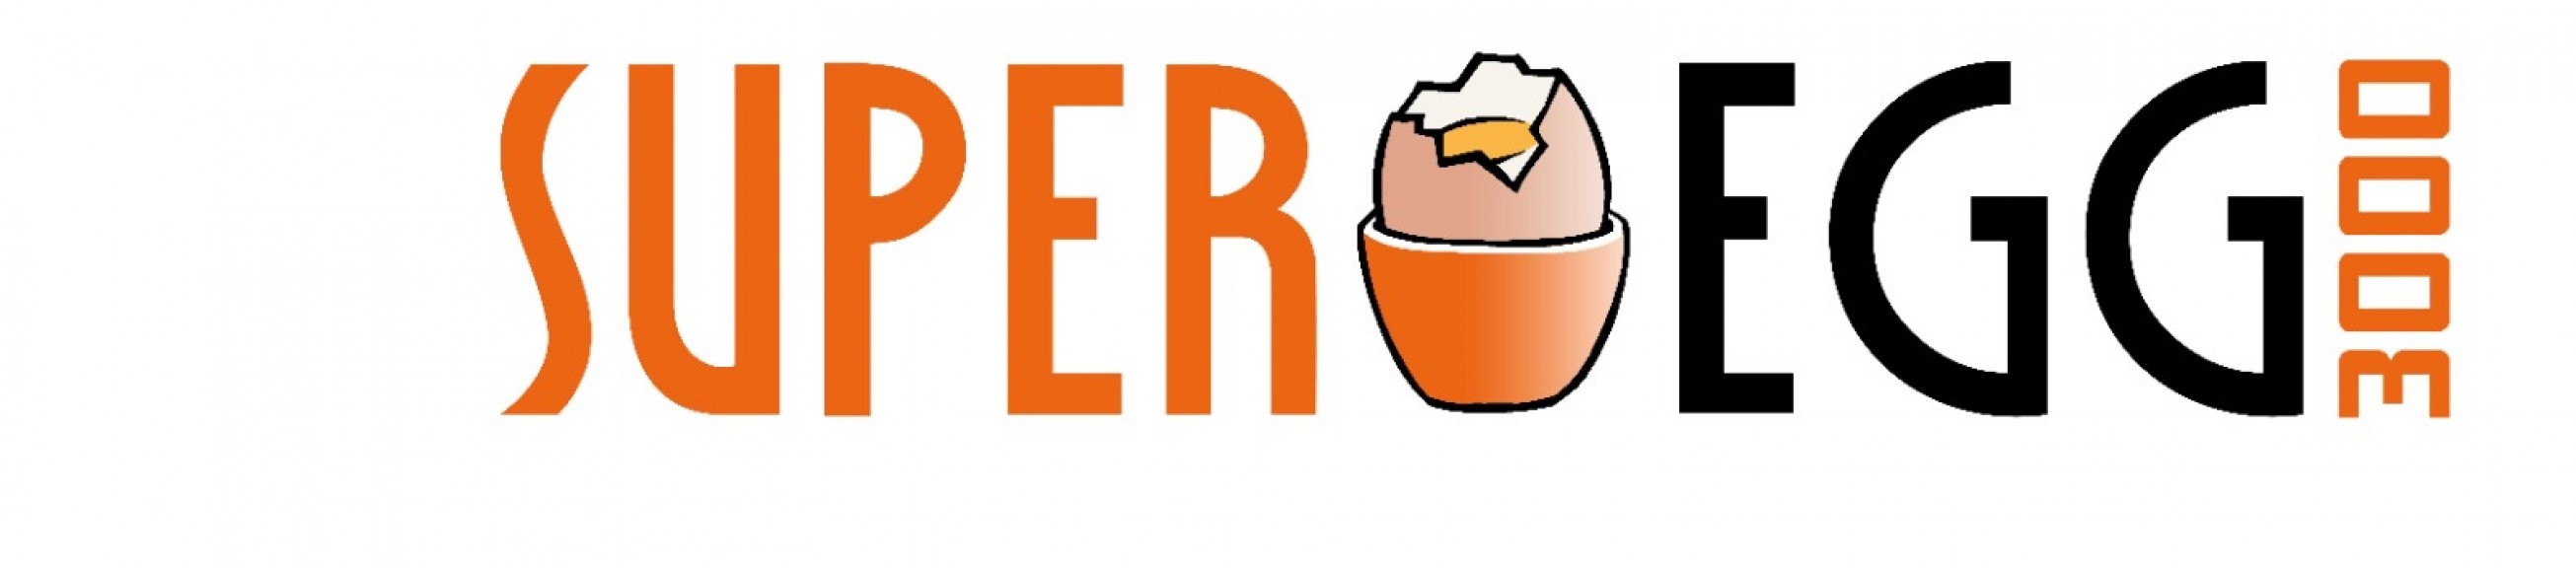 Super Egg 3000 ist das Eierkochersystem, das der Handelsvertreter Tom Rohrböck vertreibt (Quelle: Super Egg 3000)